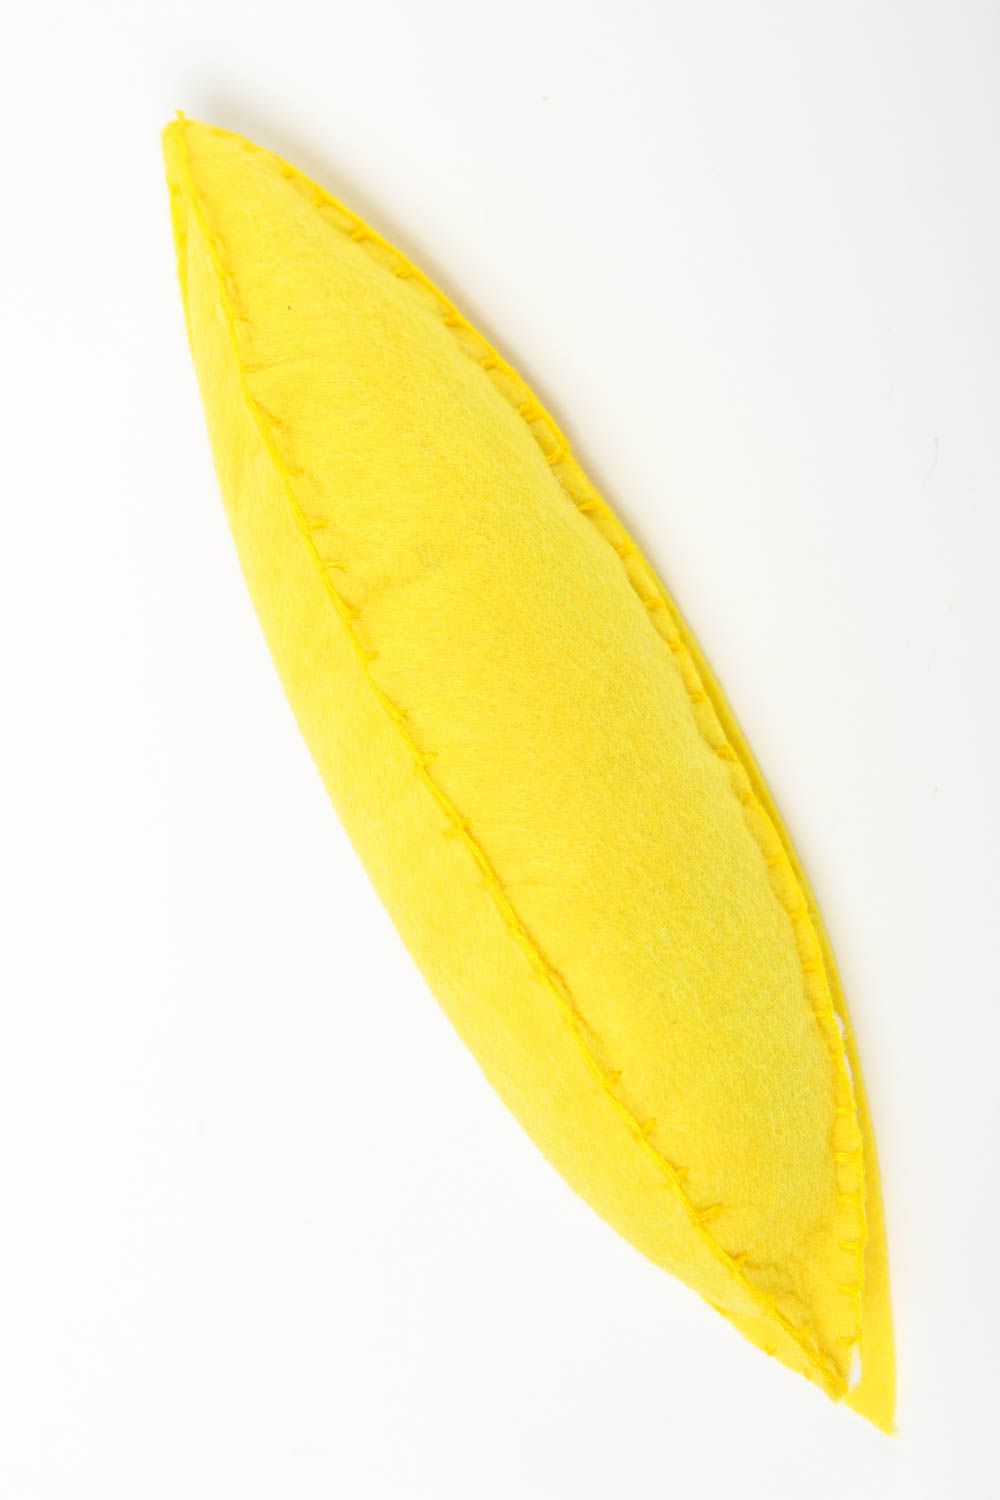 Игрушечный фрукт банан игрушка ручной работы игрушка для детей желтая красивая фото 2